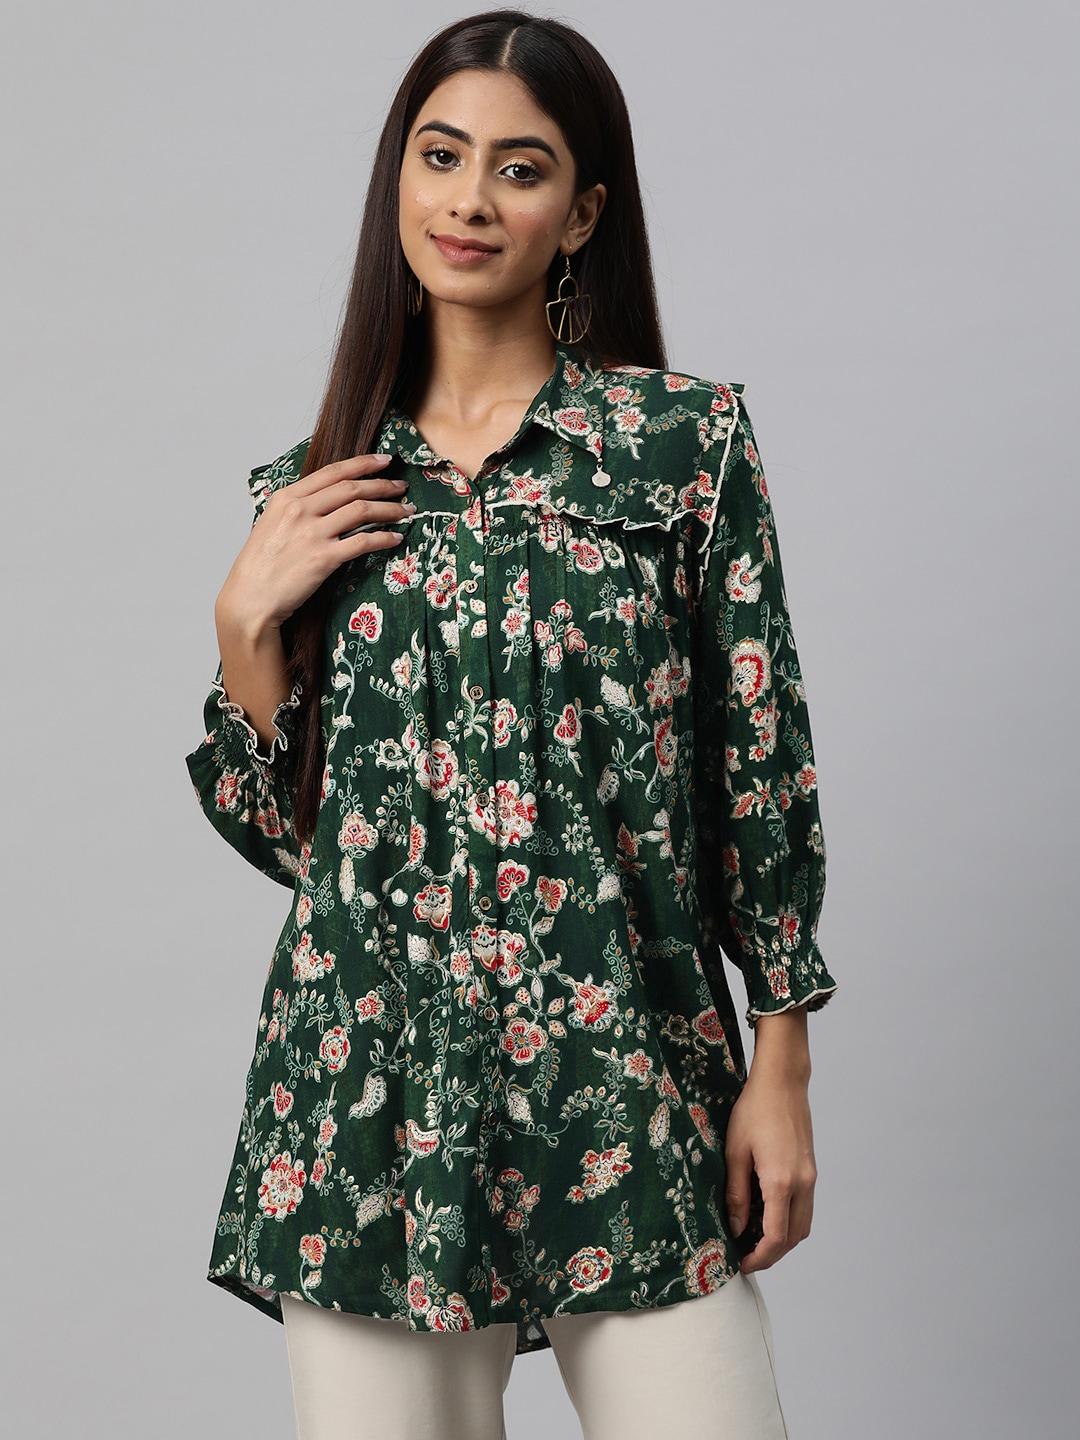 nayam-by-lakshita-smart-floral-printed-puff-sleeves-ruffled-longline-casual-shirt